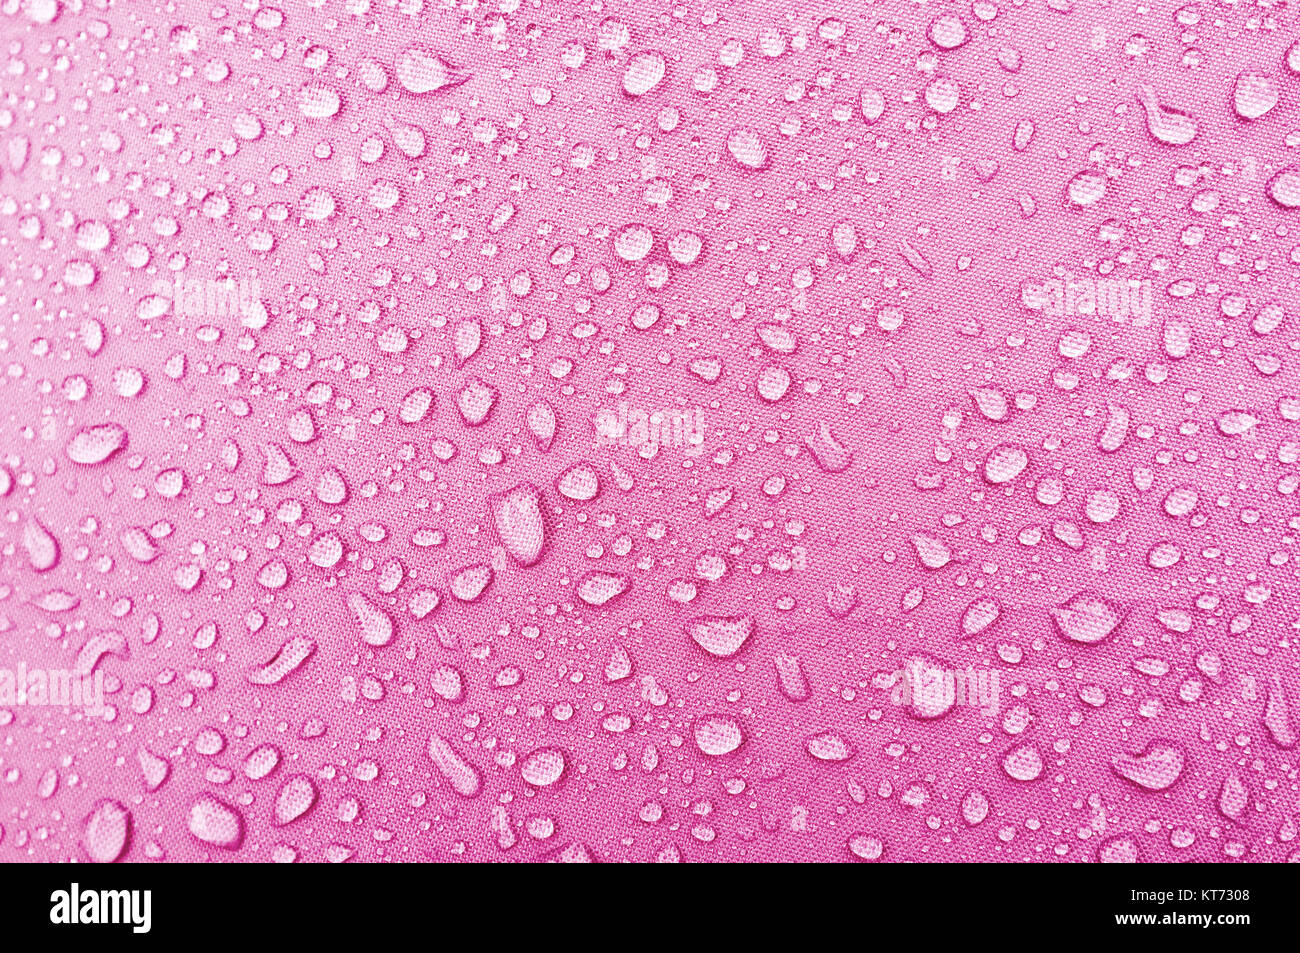 Wassertropfen auf rosa Fibre wasserdichtes Gewebe. Stockfoto